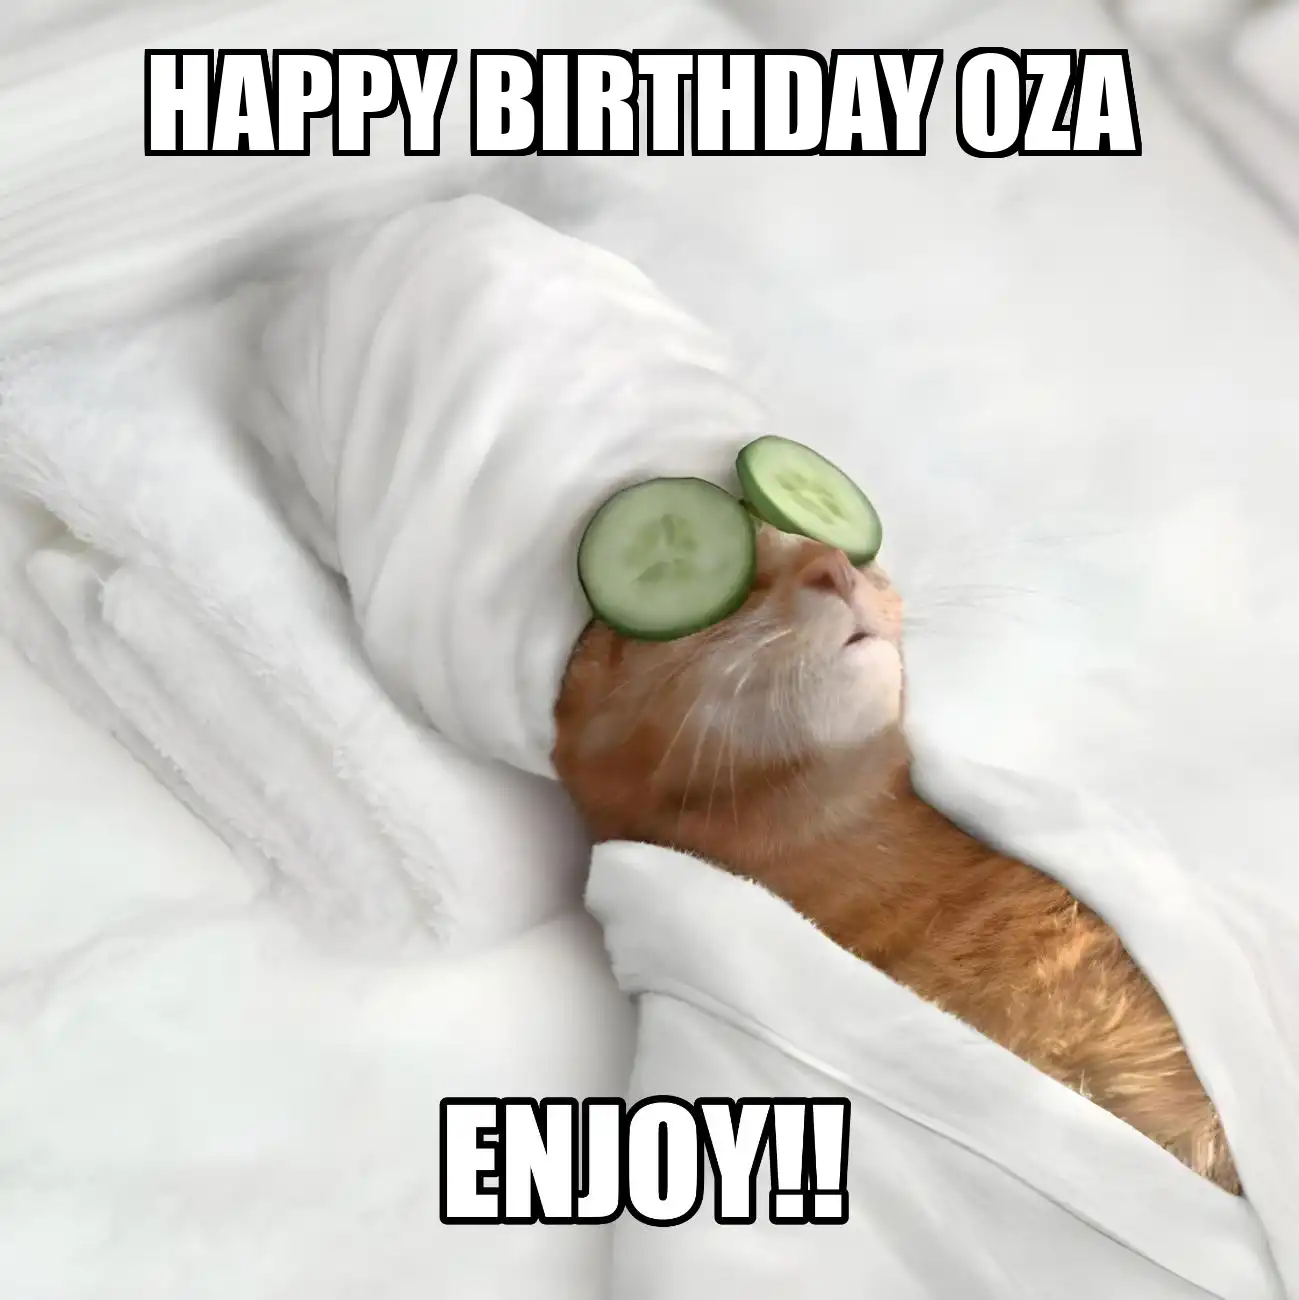 Happy Birthday Oza Enjoy Cat Meme